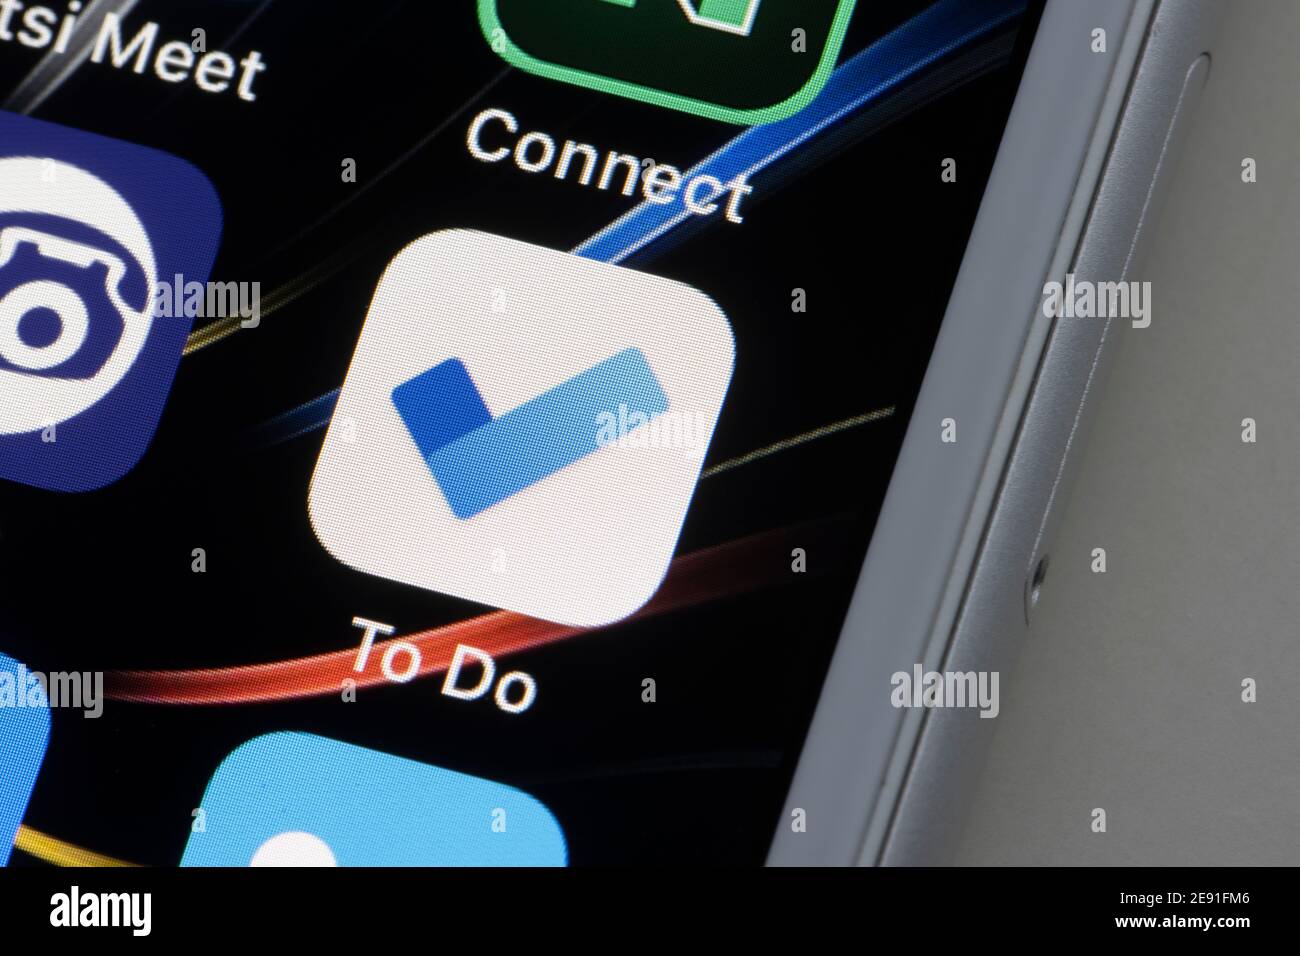 L'icône de l'application mobile Microsoft To Do apparaît sur un iPhone le 1er février 2021. Microsoft To Do est une application de gestion des tâches basée sur le cloud. Banque D'Images